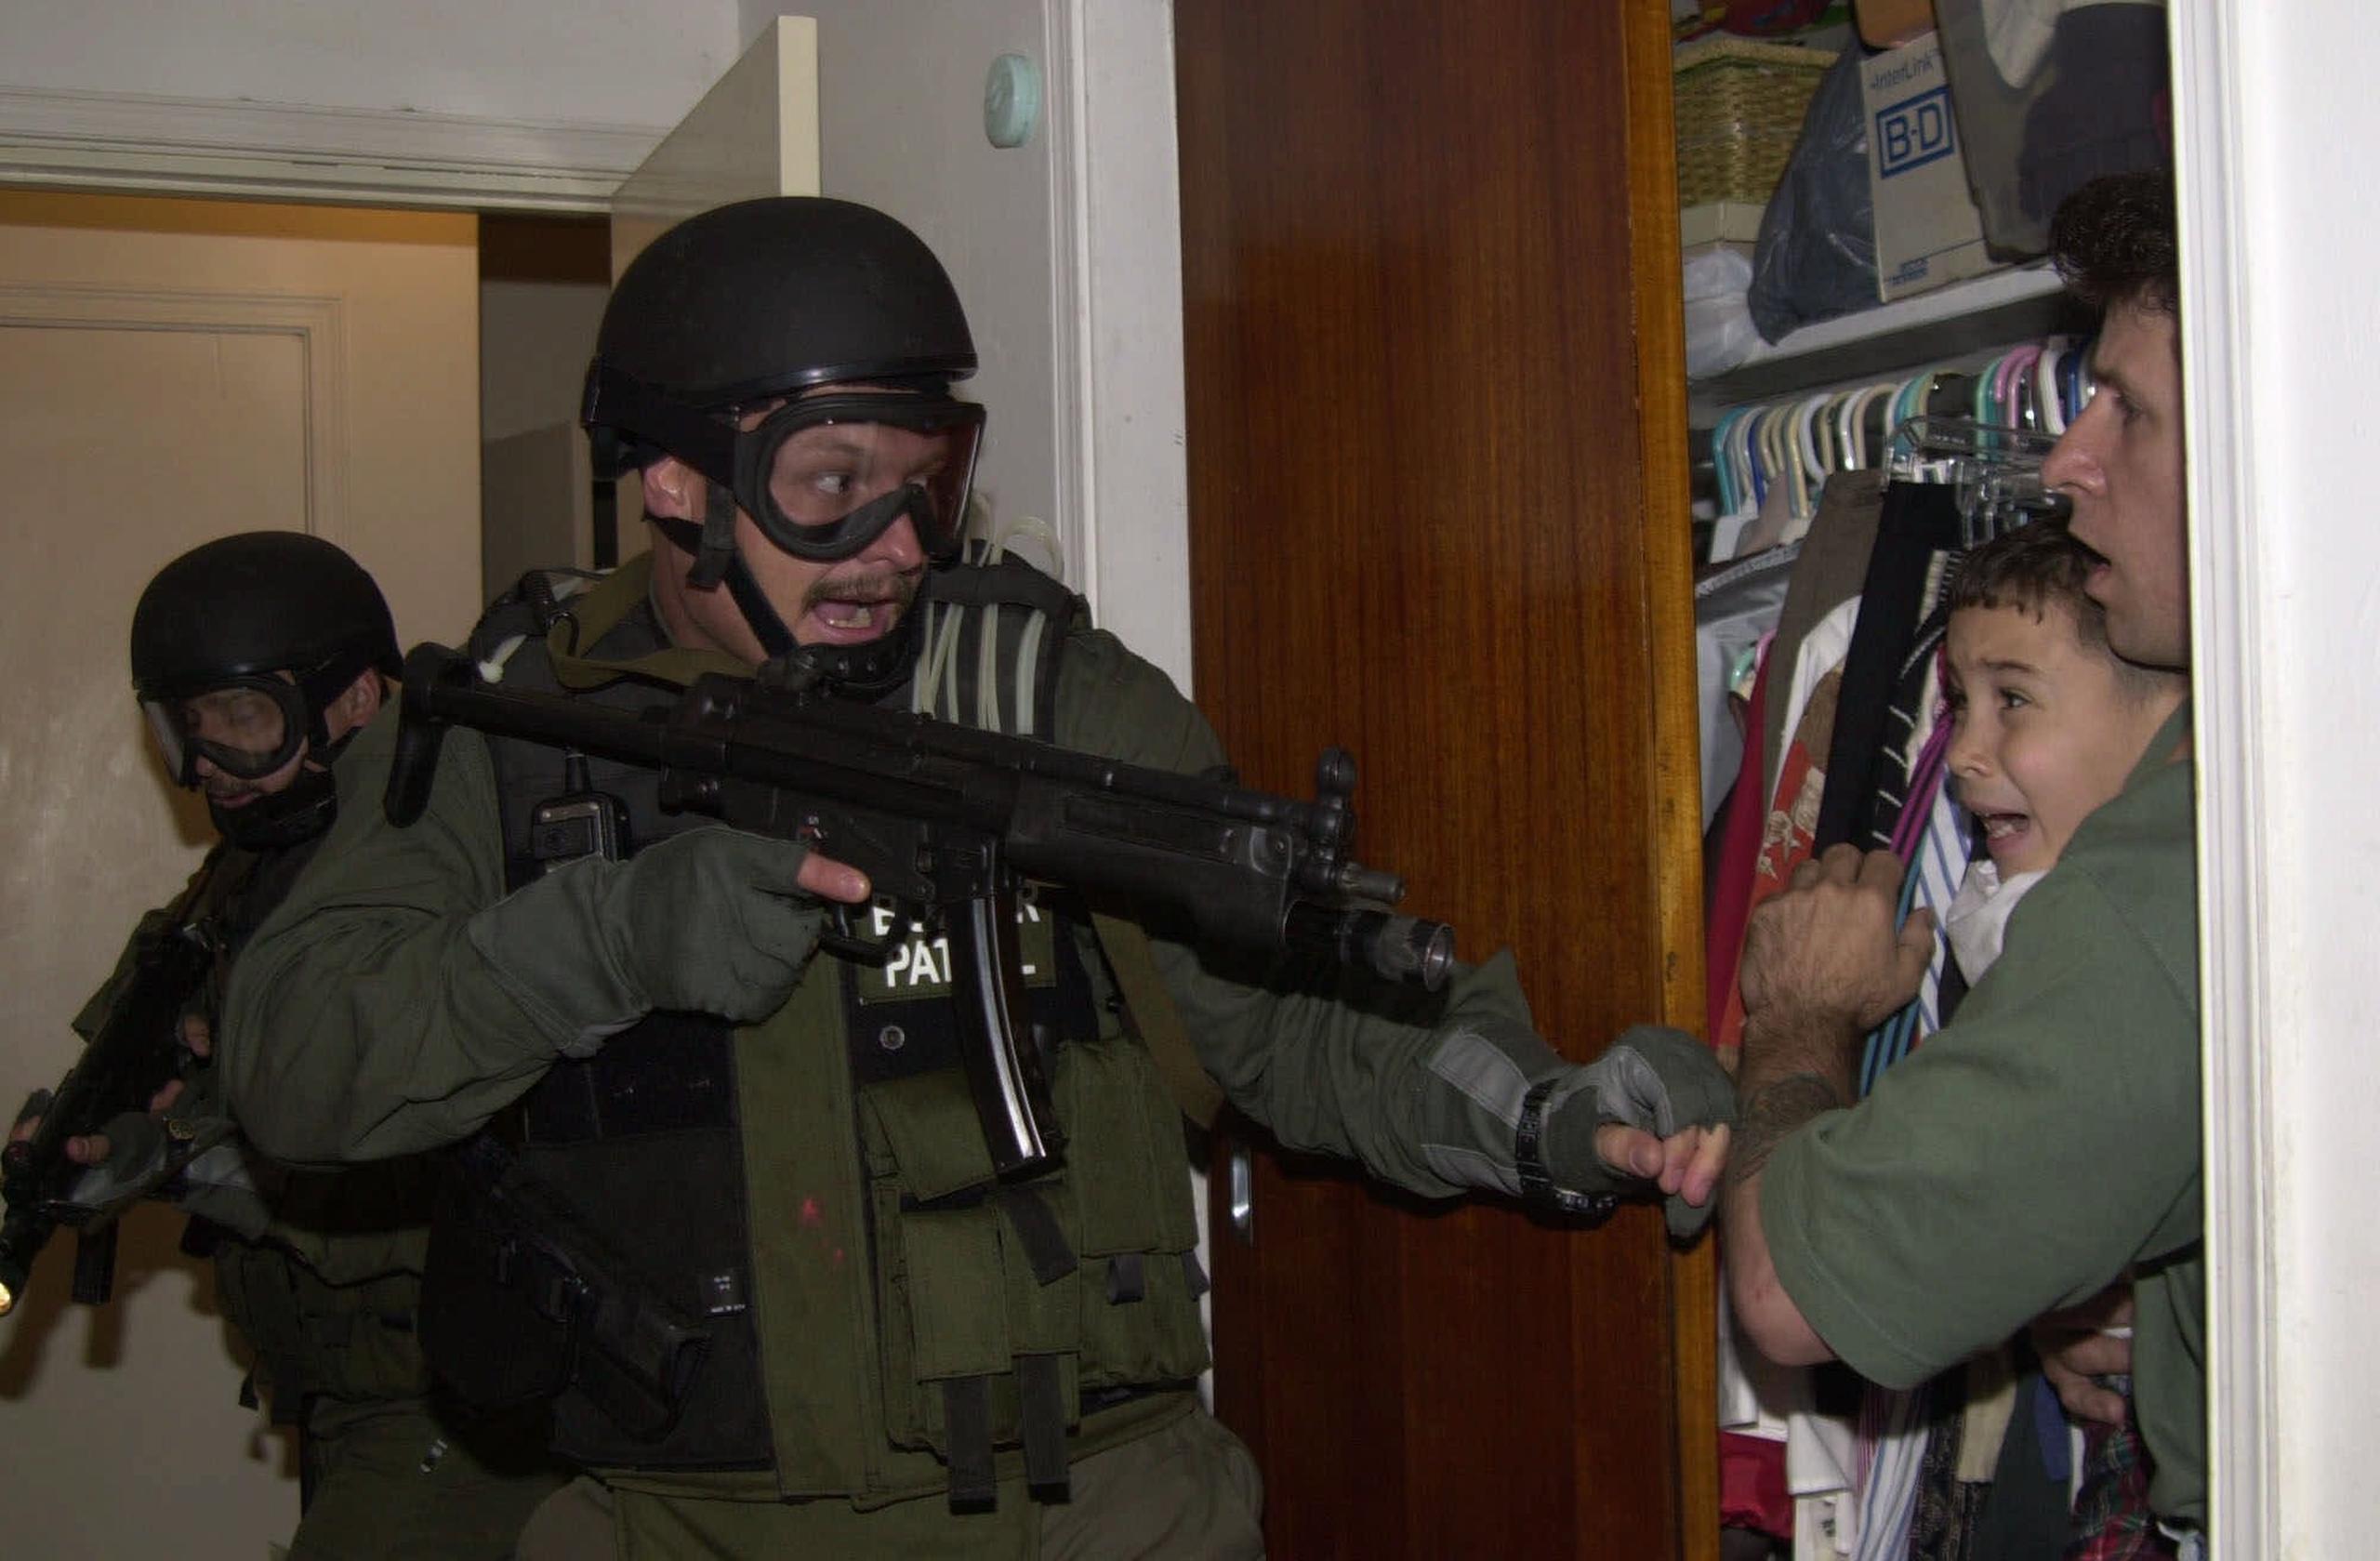 El pescador Donato Dalrymple sostiene a Elián González, de 6 años, dentro de la habitación de Lázaro González durante la madrugada del sábado 22 de abril de 2000, cuando agentes de la Patrulla Fronteriza irrumpieron en la casa de Miami para tomar la custodia de el niño.